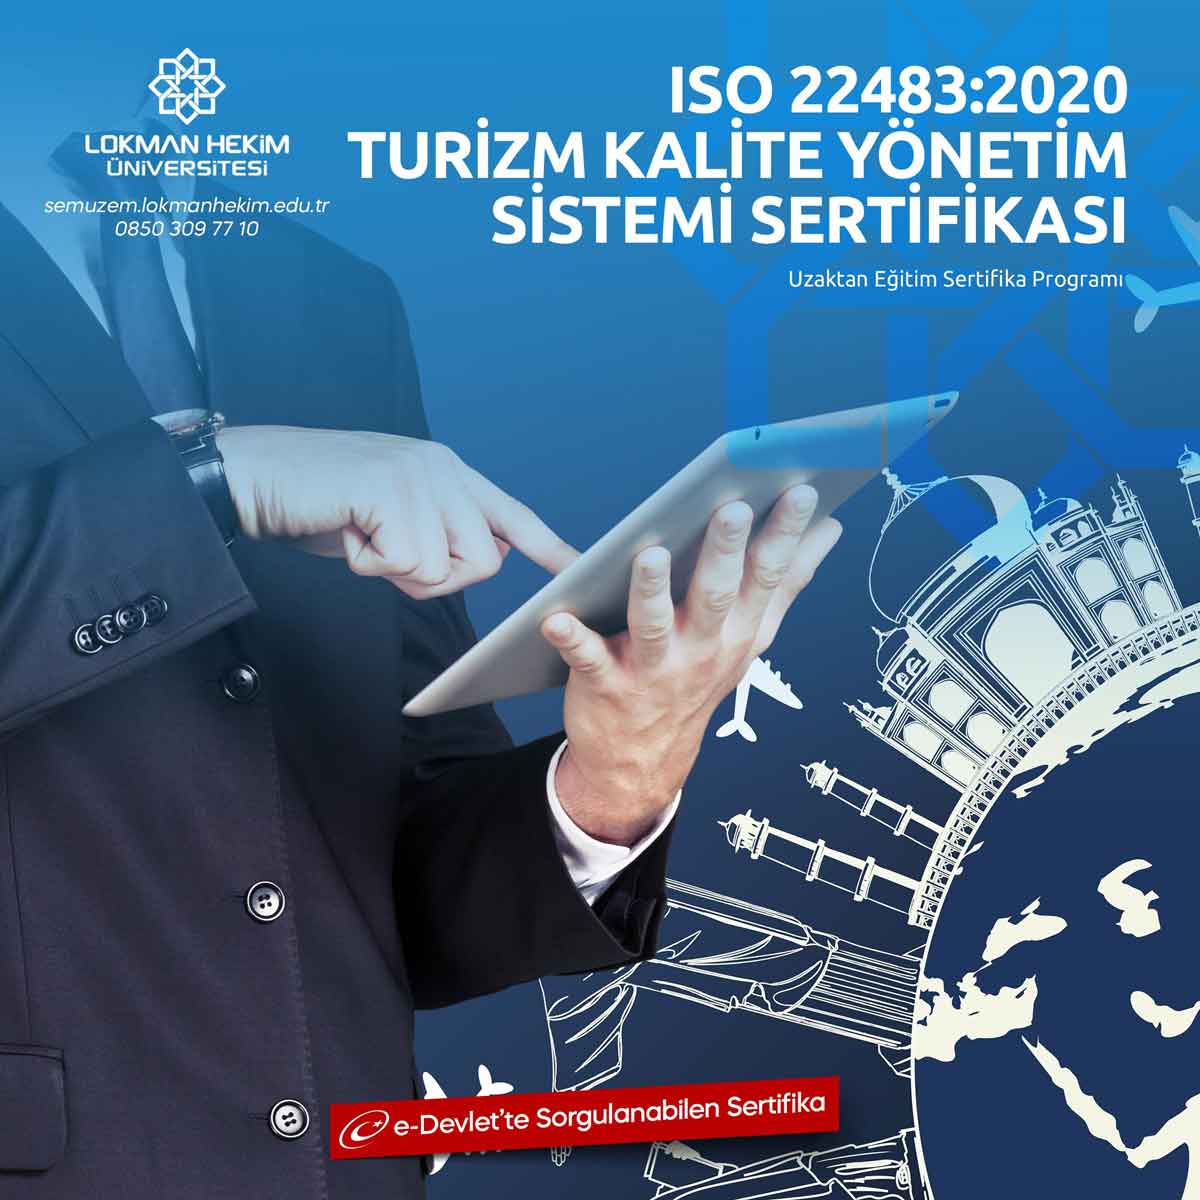 ISO 22483:2020 Turizm Kalite Yönetim Sistemi Sertifikası Nedir, Nasıl Alınır?